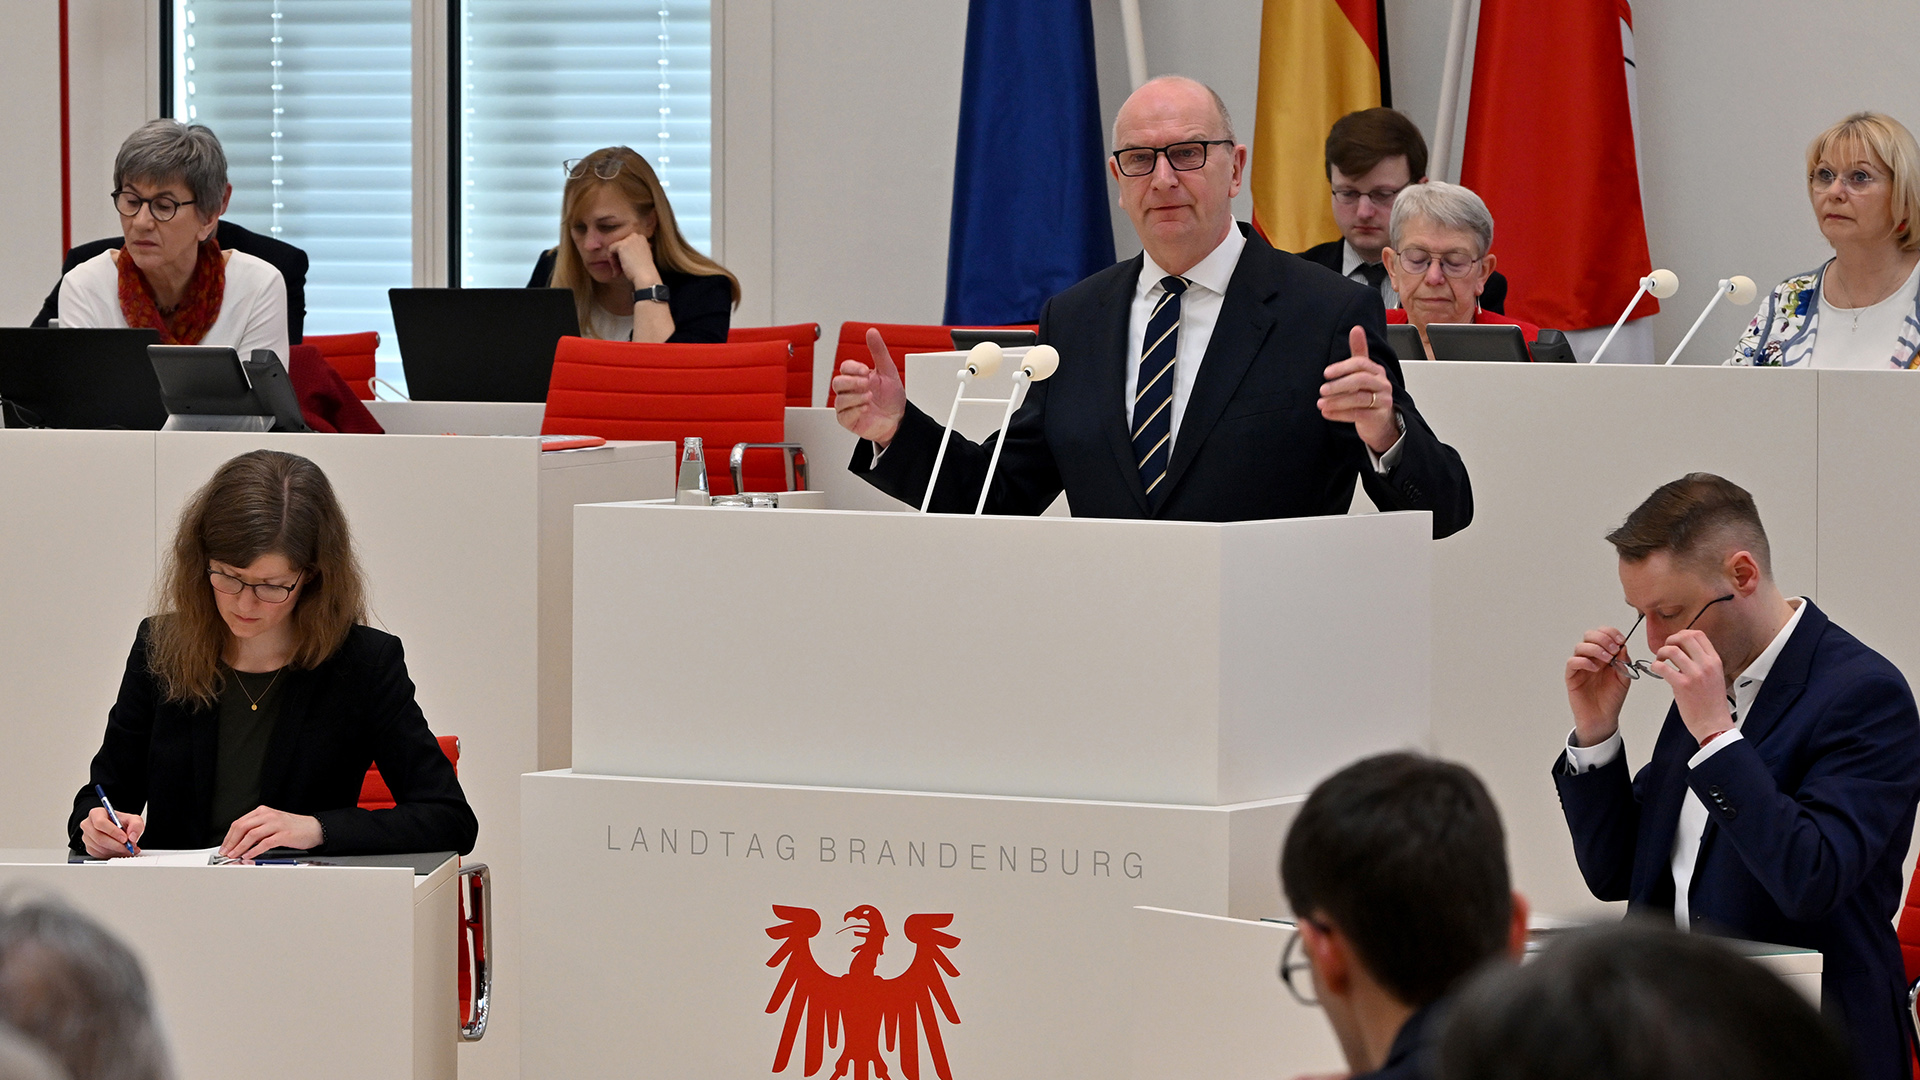 Archivbild: Dietmar Woidke (SPD), Ministerpräsident des Landes Brandenburg, spricht in der Debatte des Landtages. (Quelle: dpa/Settnik)